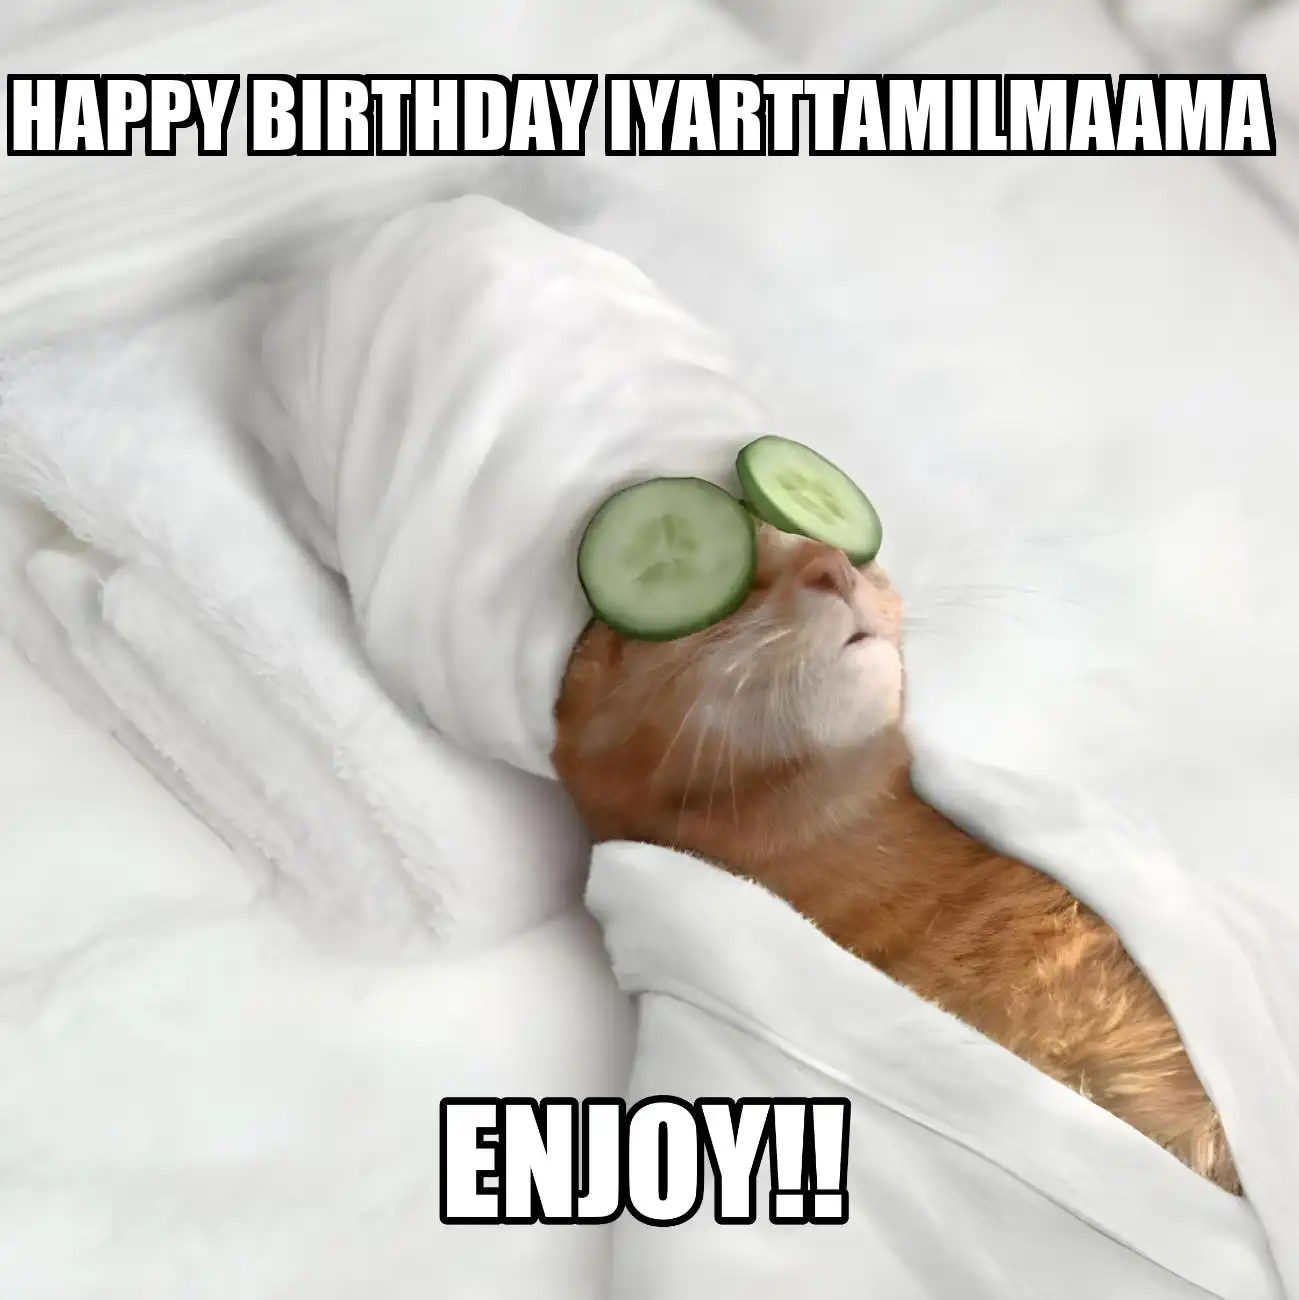 Happy Birthday Iyarttamilmaama Enjoy Cat Meme